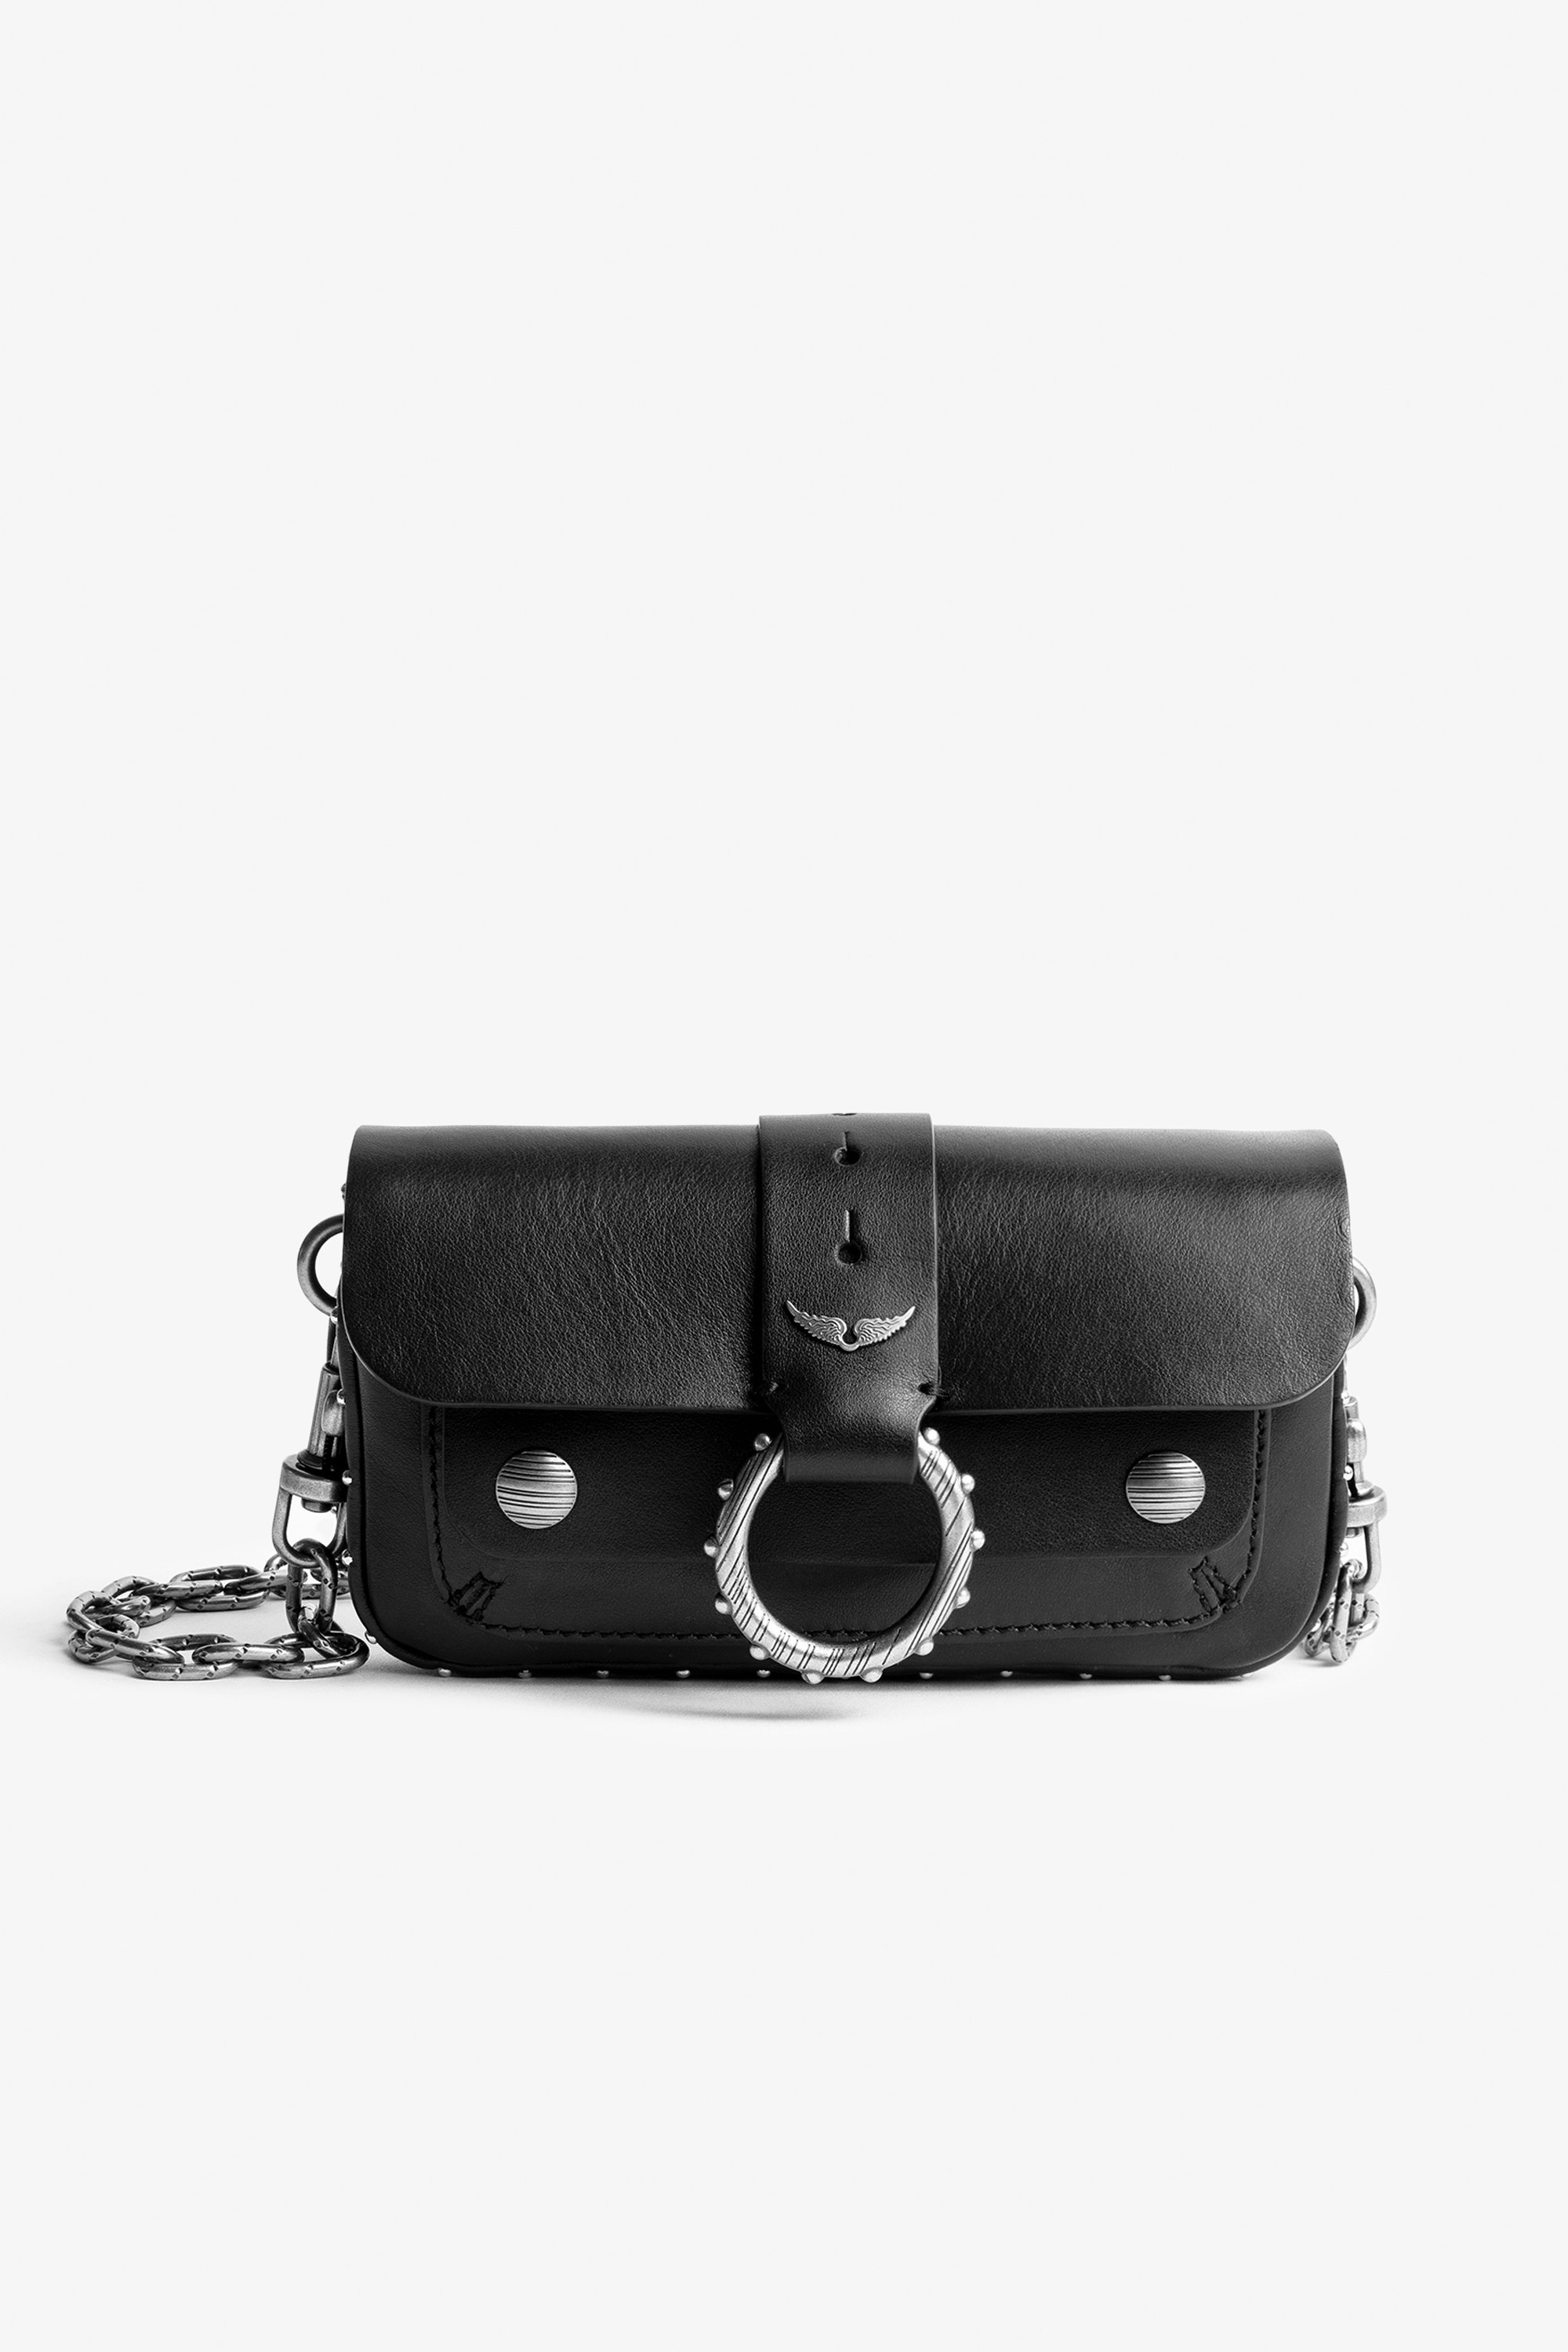 Tasche Kate Wallet Ikonische Damen-Handtasche Kate Wallet aus schwarzem Glattleder.